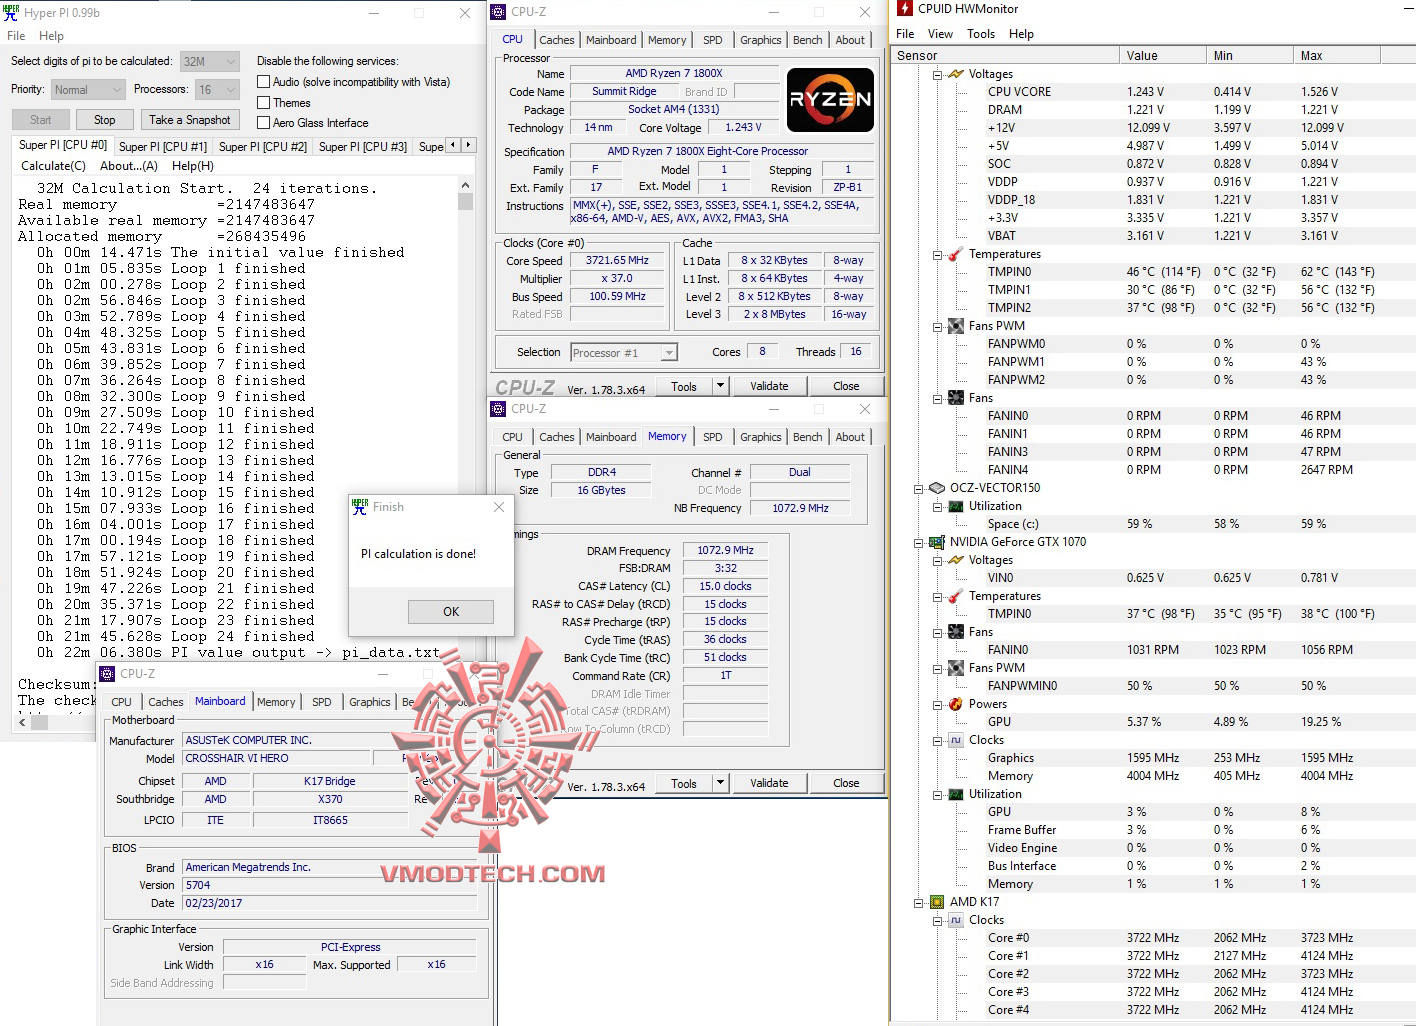 hyperpi32 1 AMD RYZEN 7 1800X REVIEW 